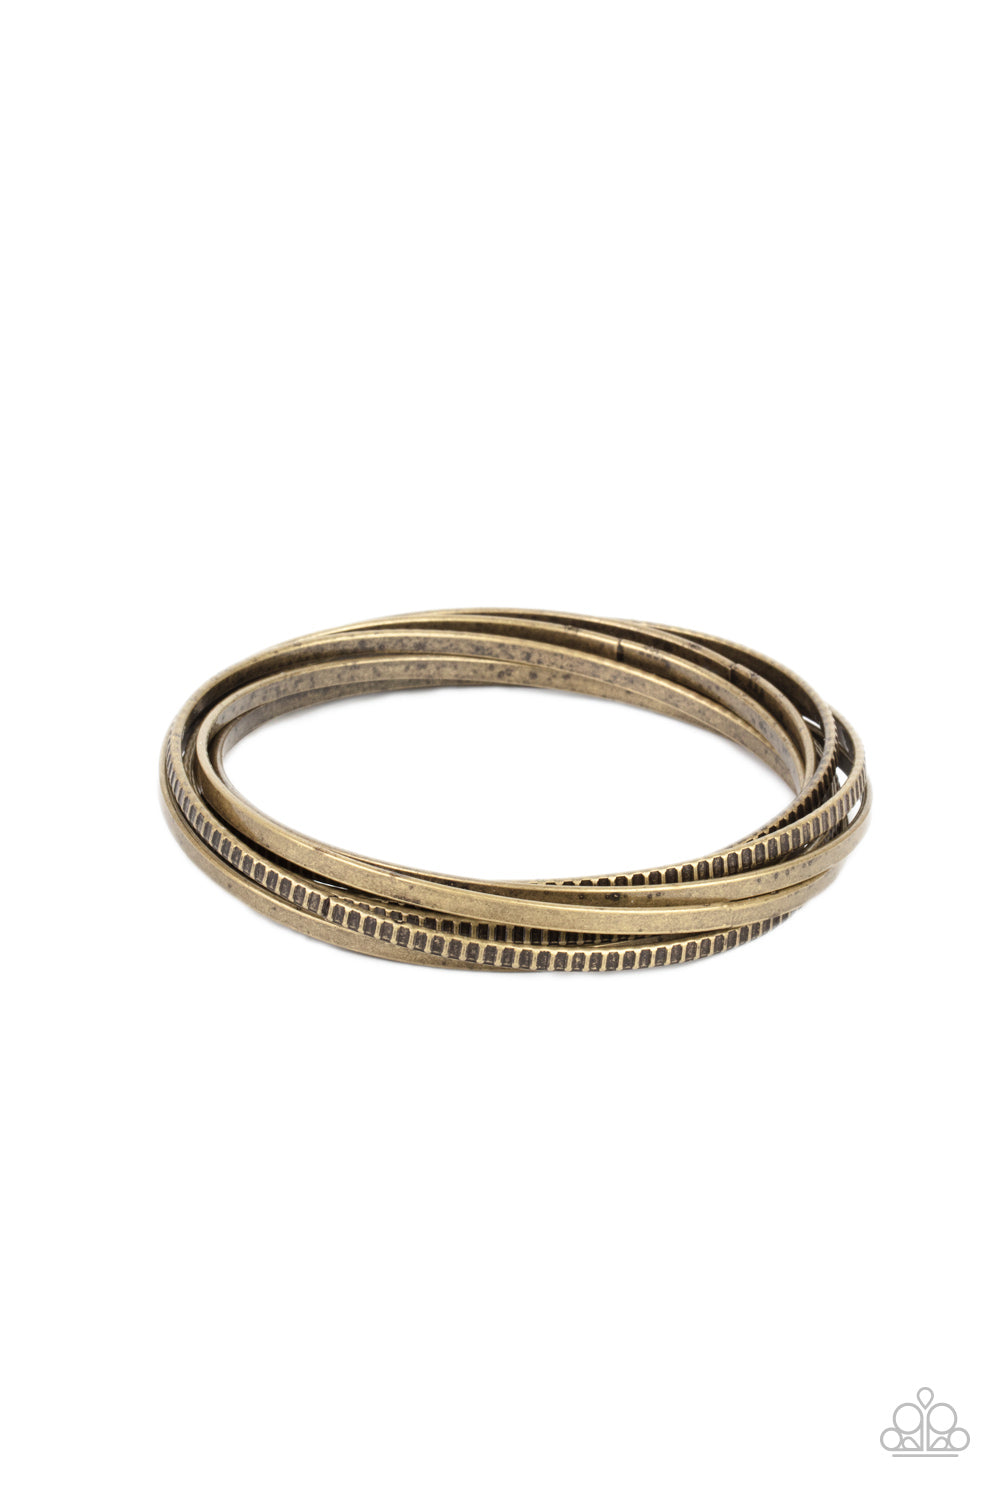 Trending in Tread - Brass Bracelet freeshipping - JewLz4u Gemstone Gallery